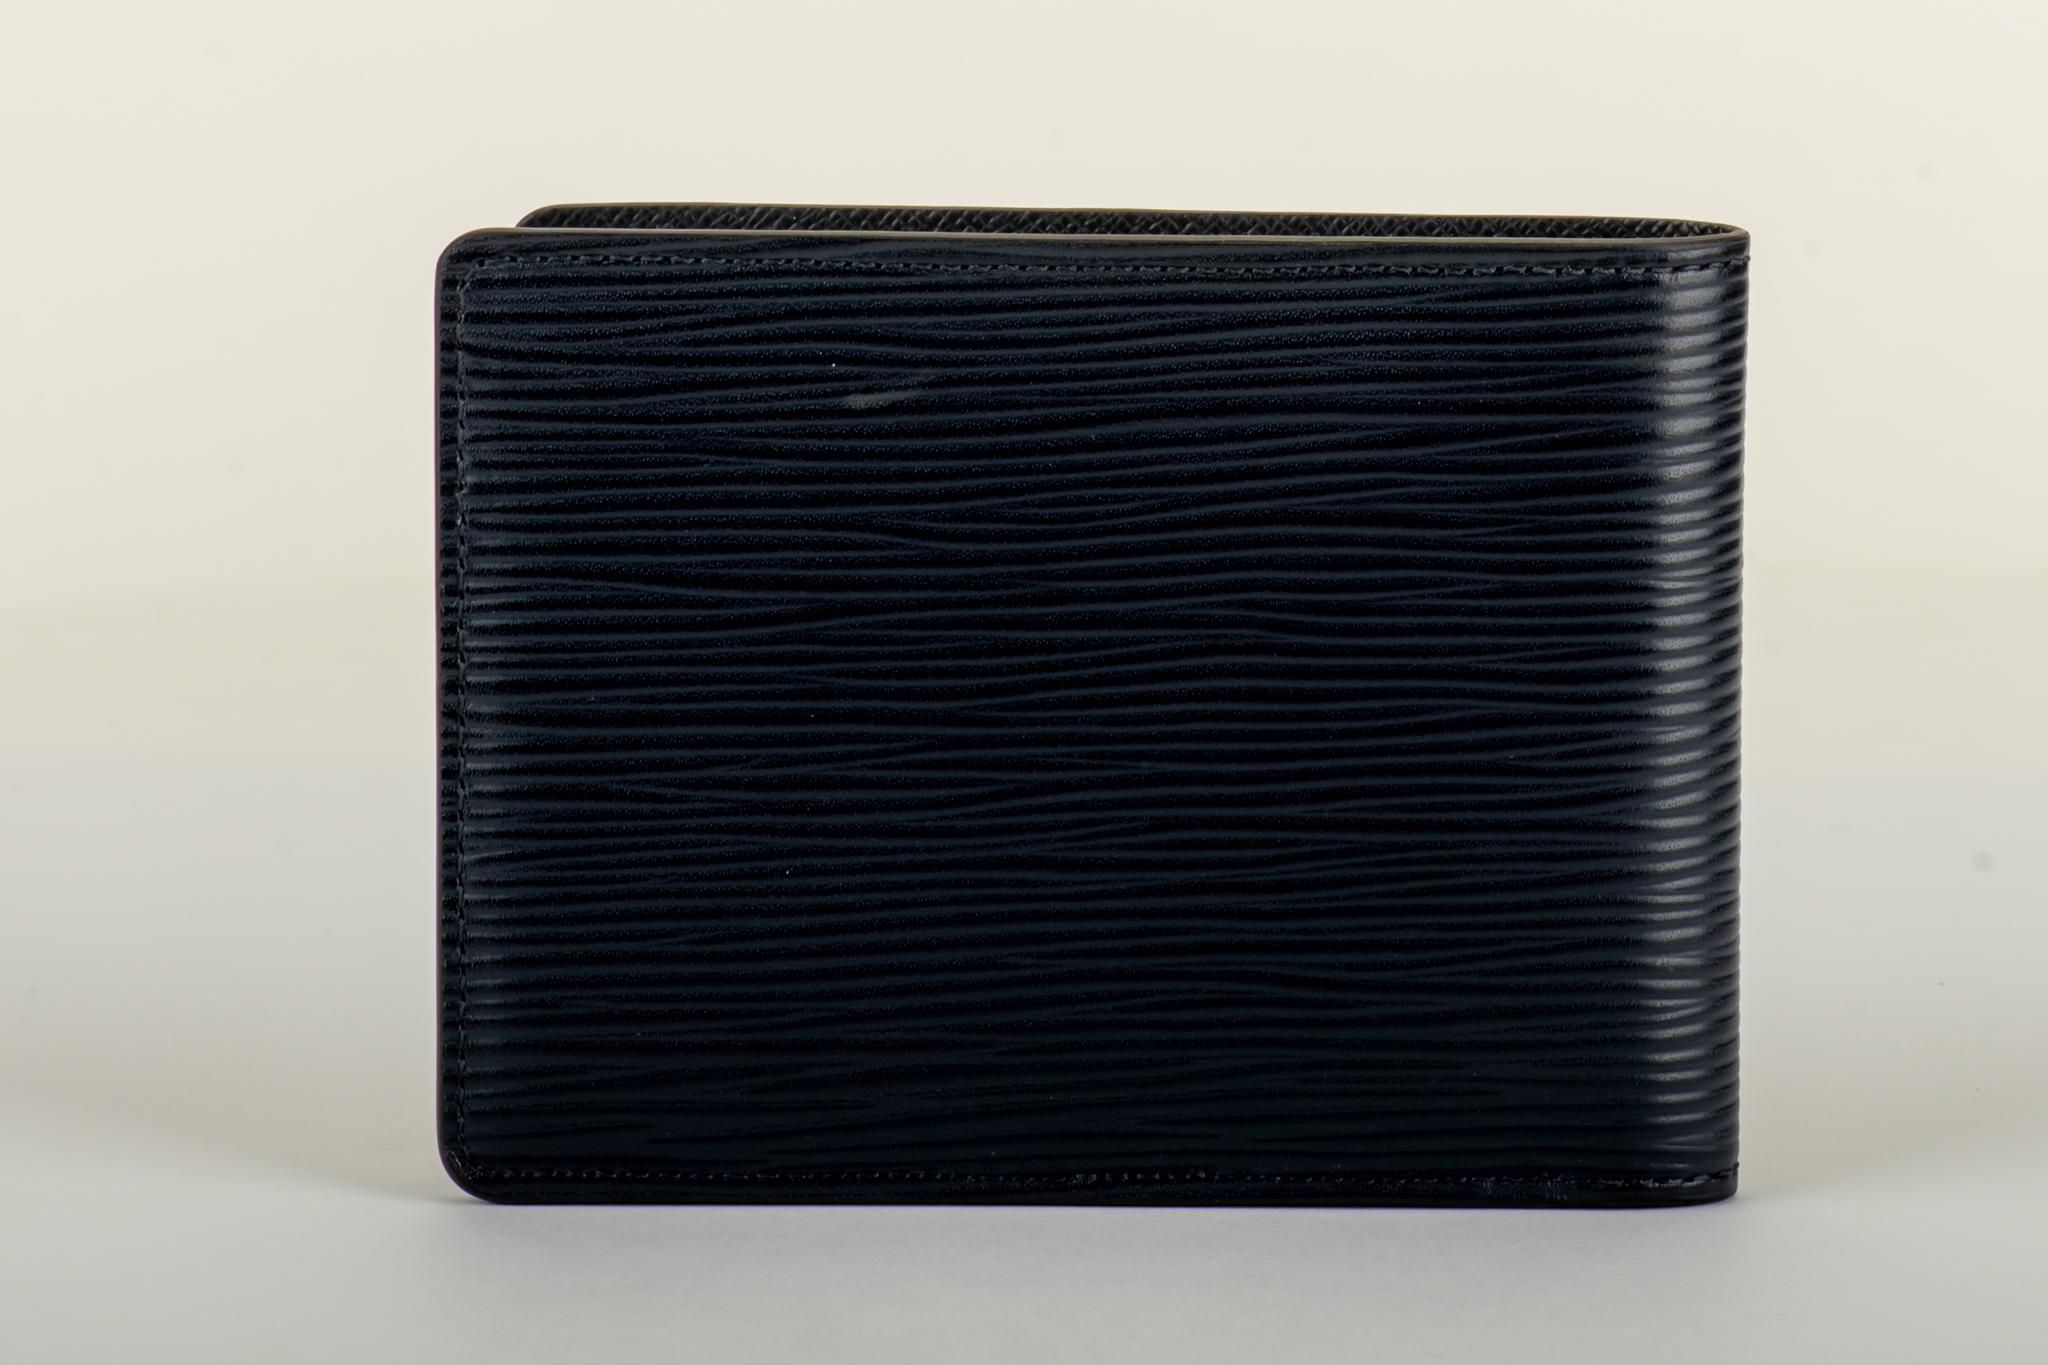 Louis Vuitton navy blue epi leather men's wallet. Comes with original box